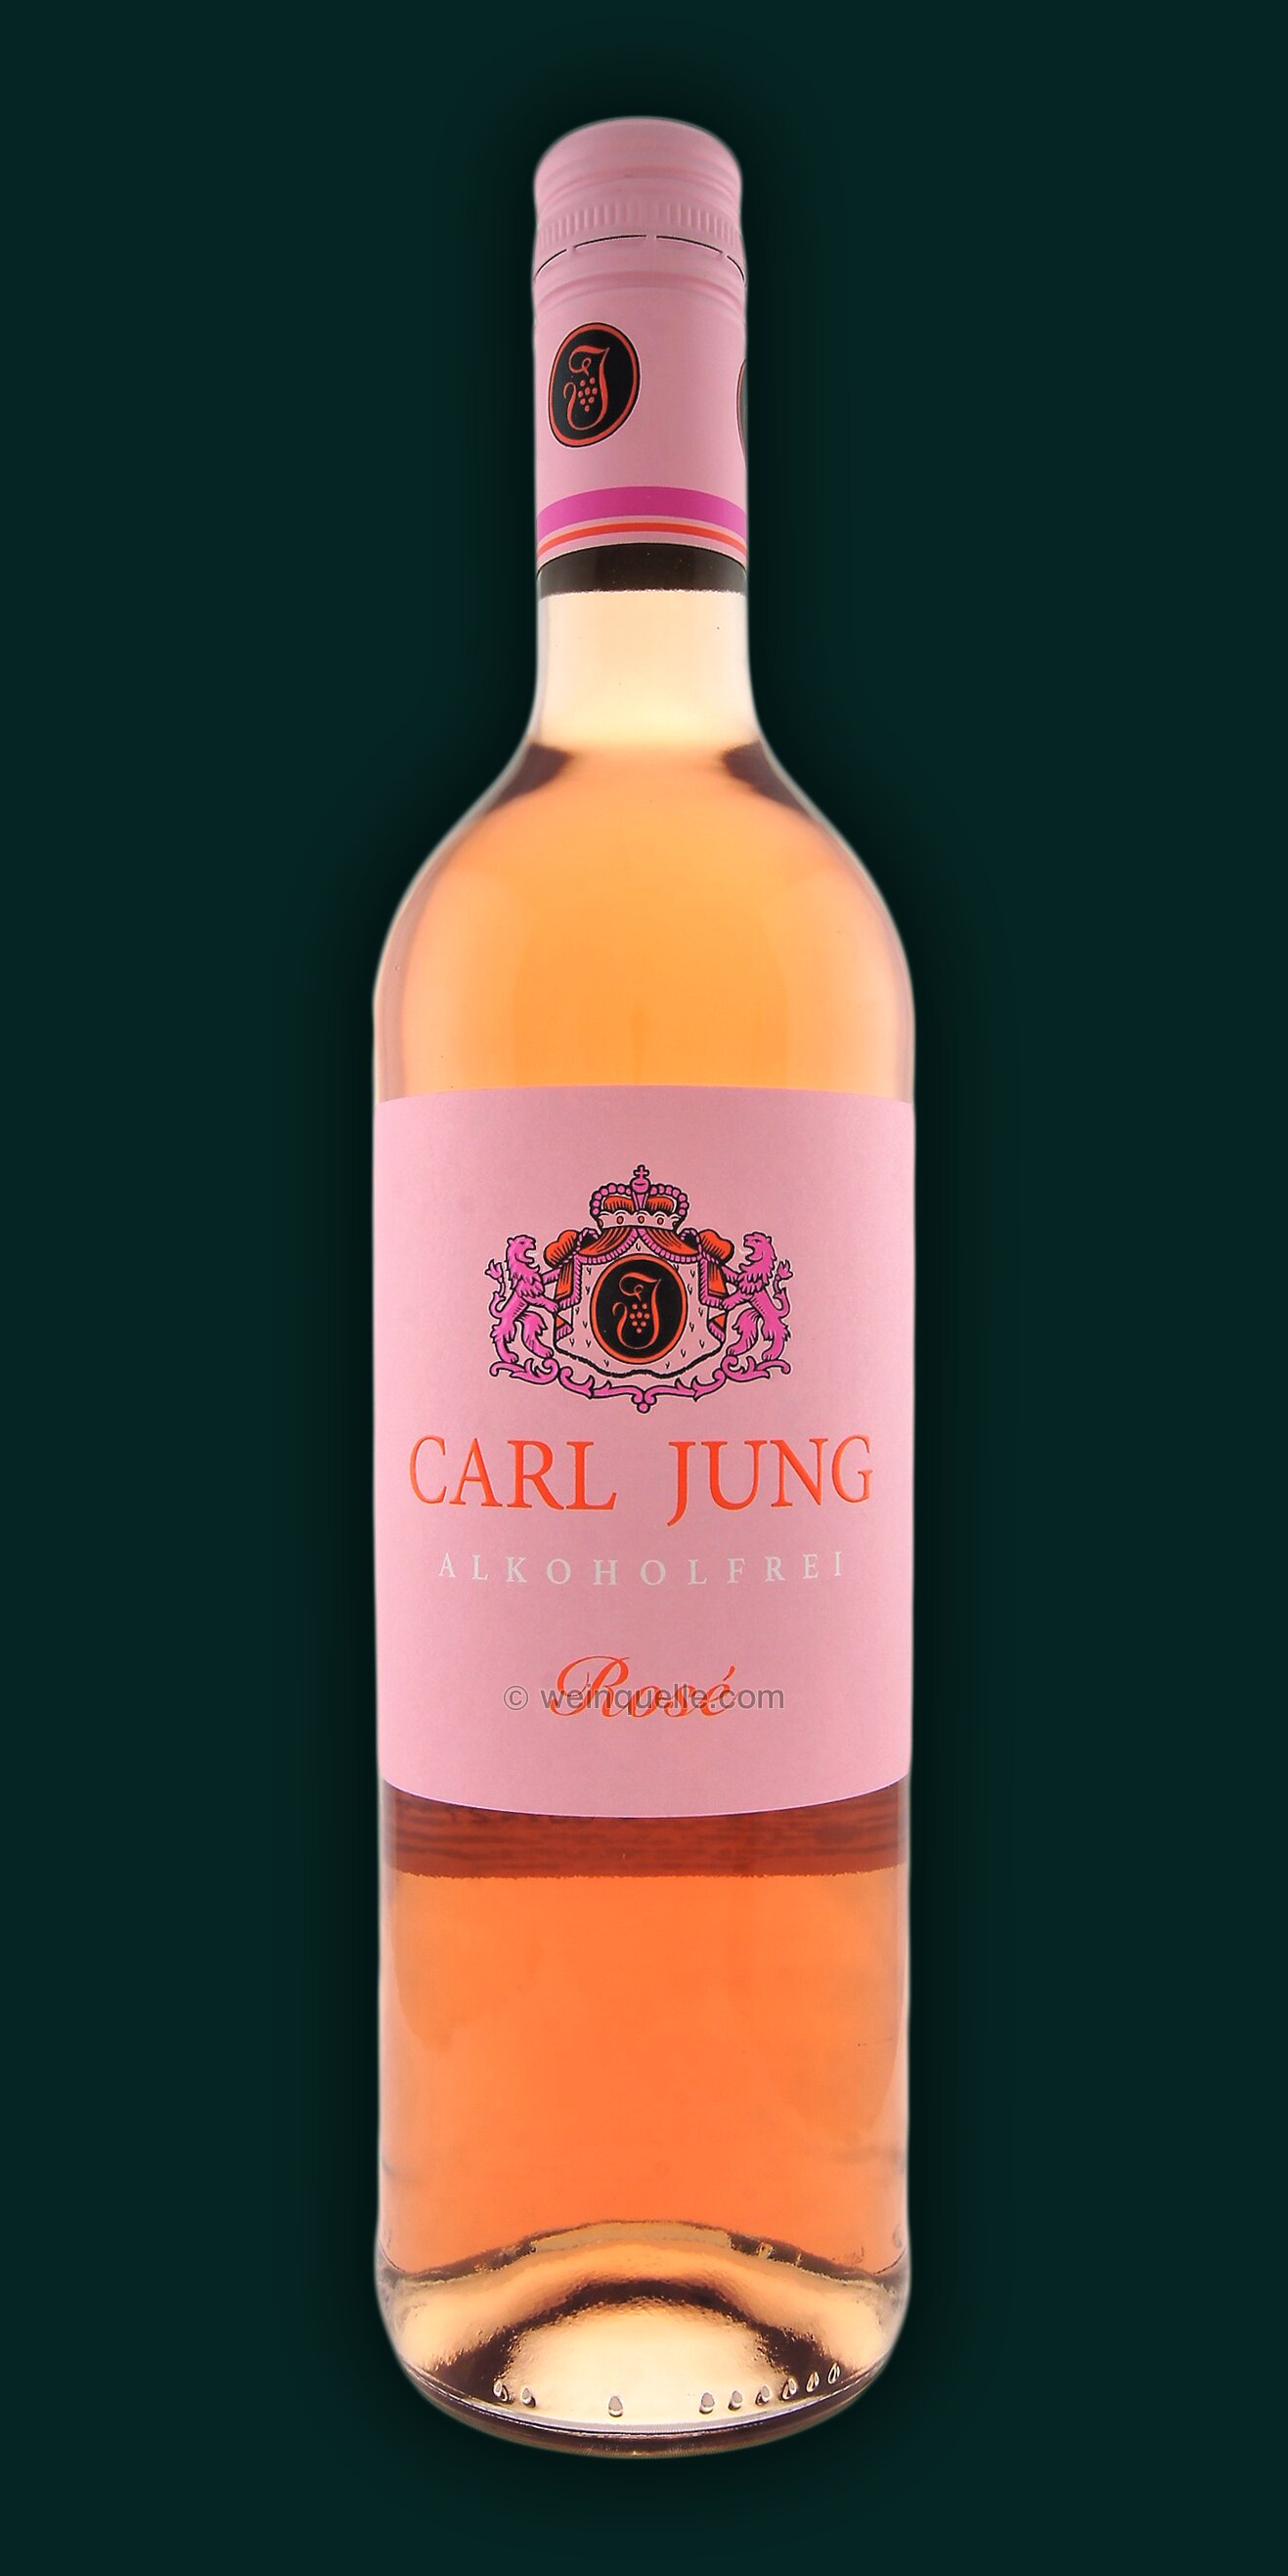 Weinquelle 4,95 - Jung Carl Rosé Alkoholfrei, Lühmann €